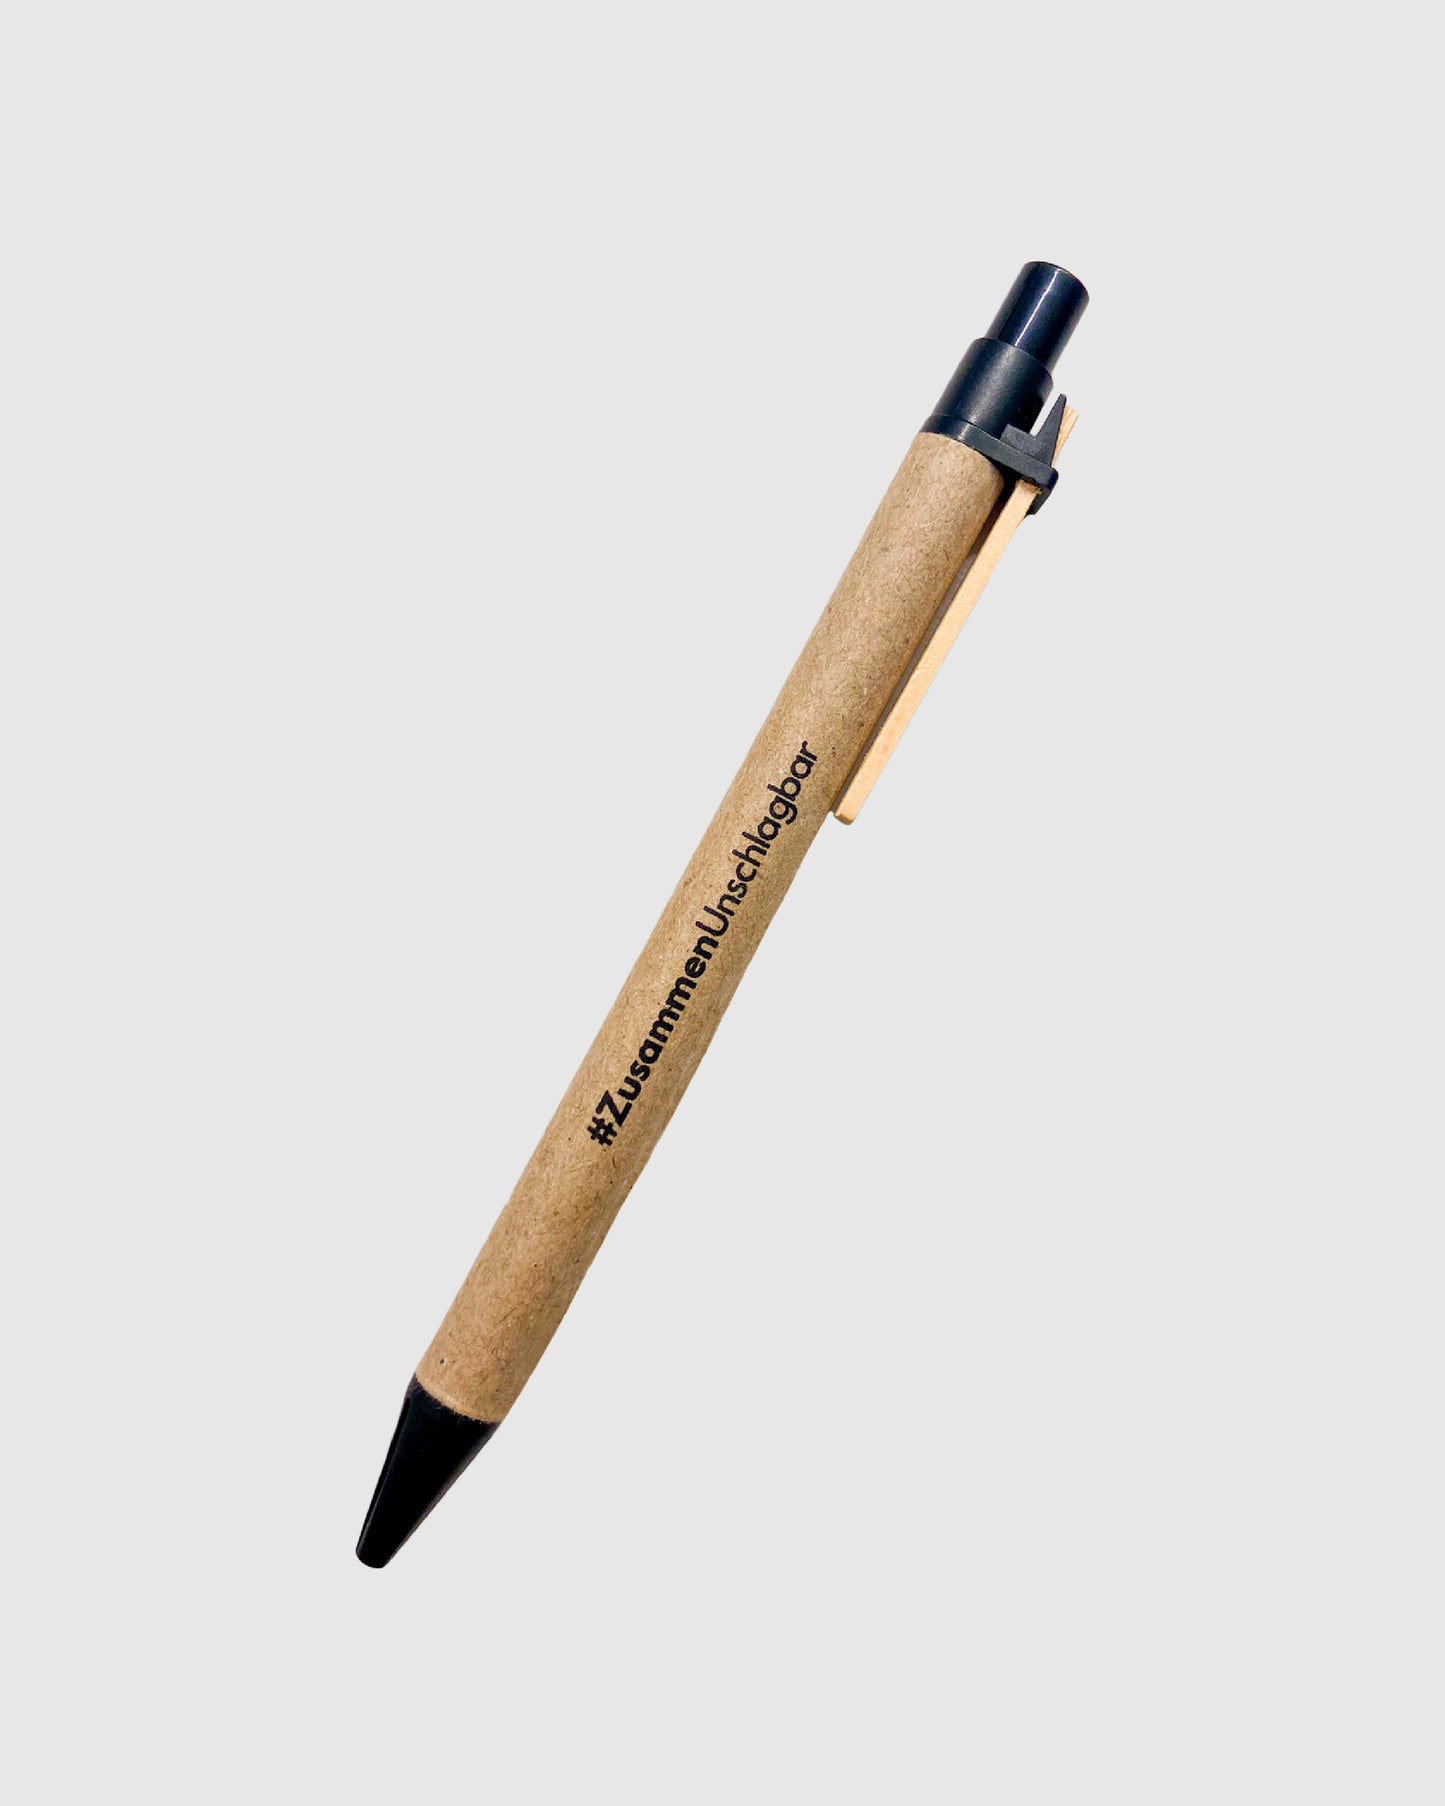 Kugelschreiber aus recycelter Pappe mit schwarzen Details und schwarzem Aufdruck des #ZusammenUnschlagbar-Mottos.